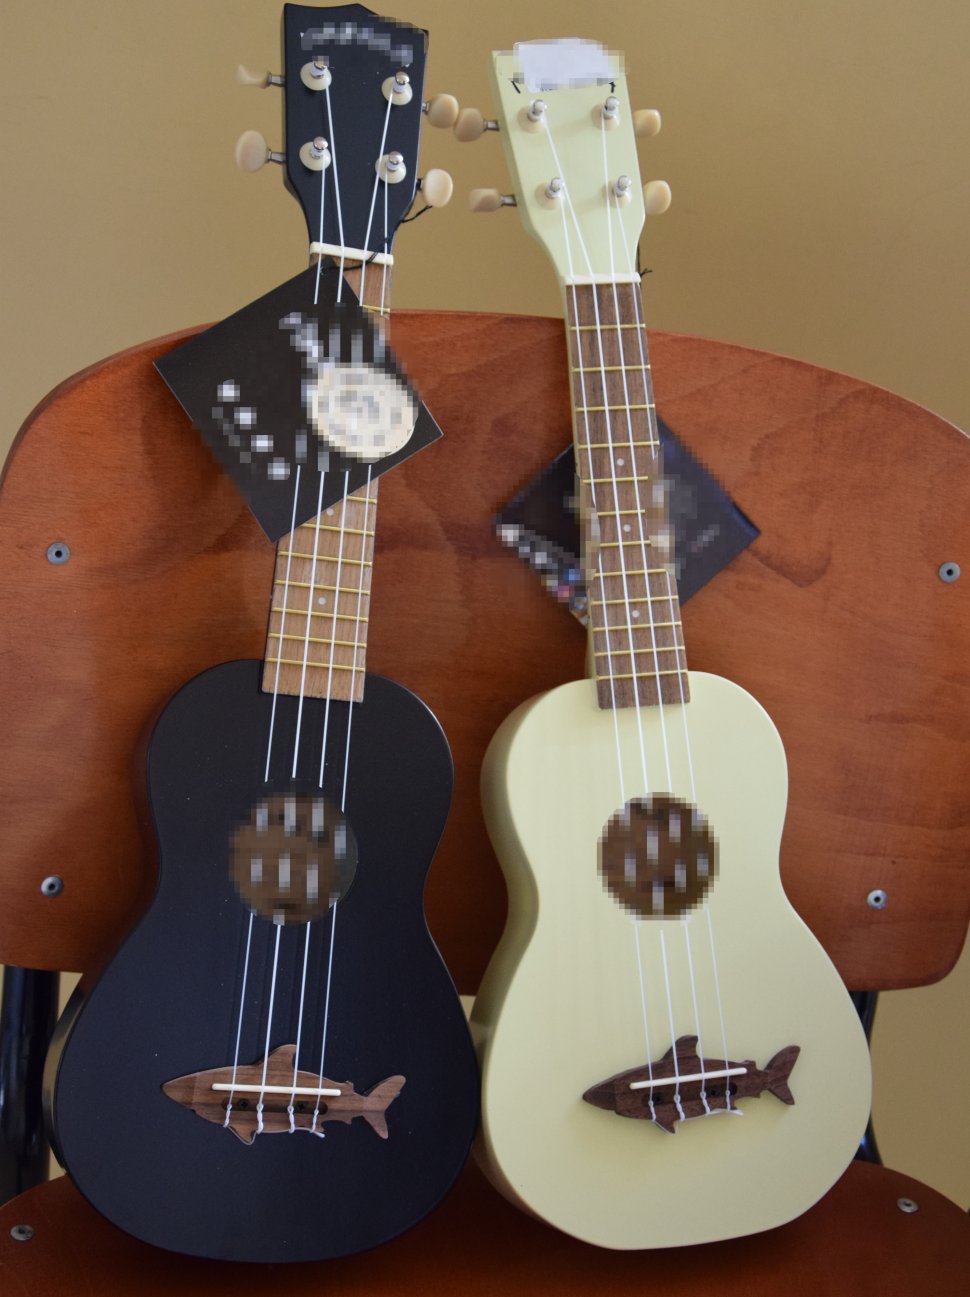 zdjęcie kolorowa: na zdjęciu widać 2 sztuki ukulele w kolorze czarnym i białym